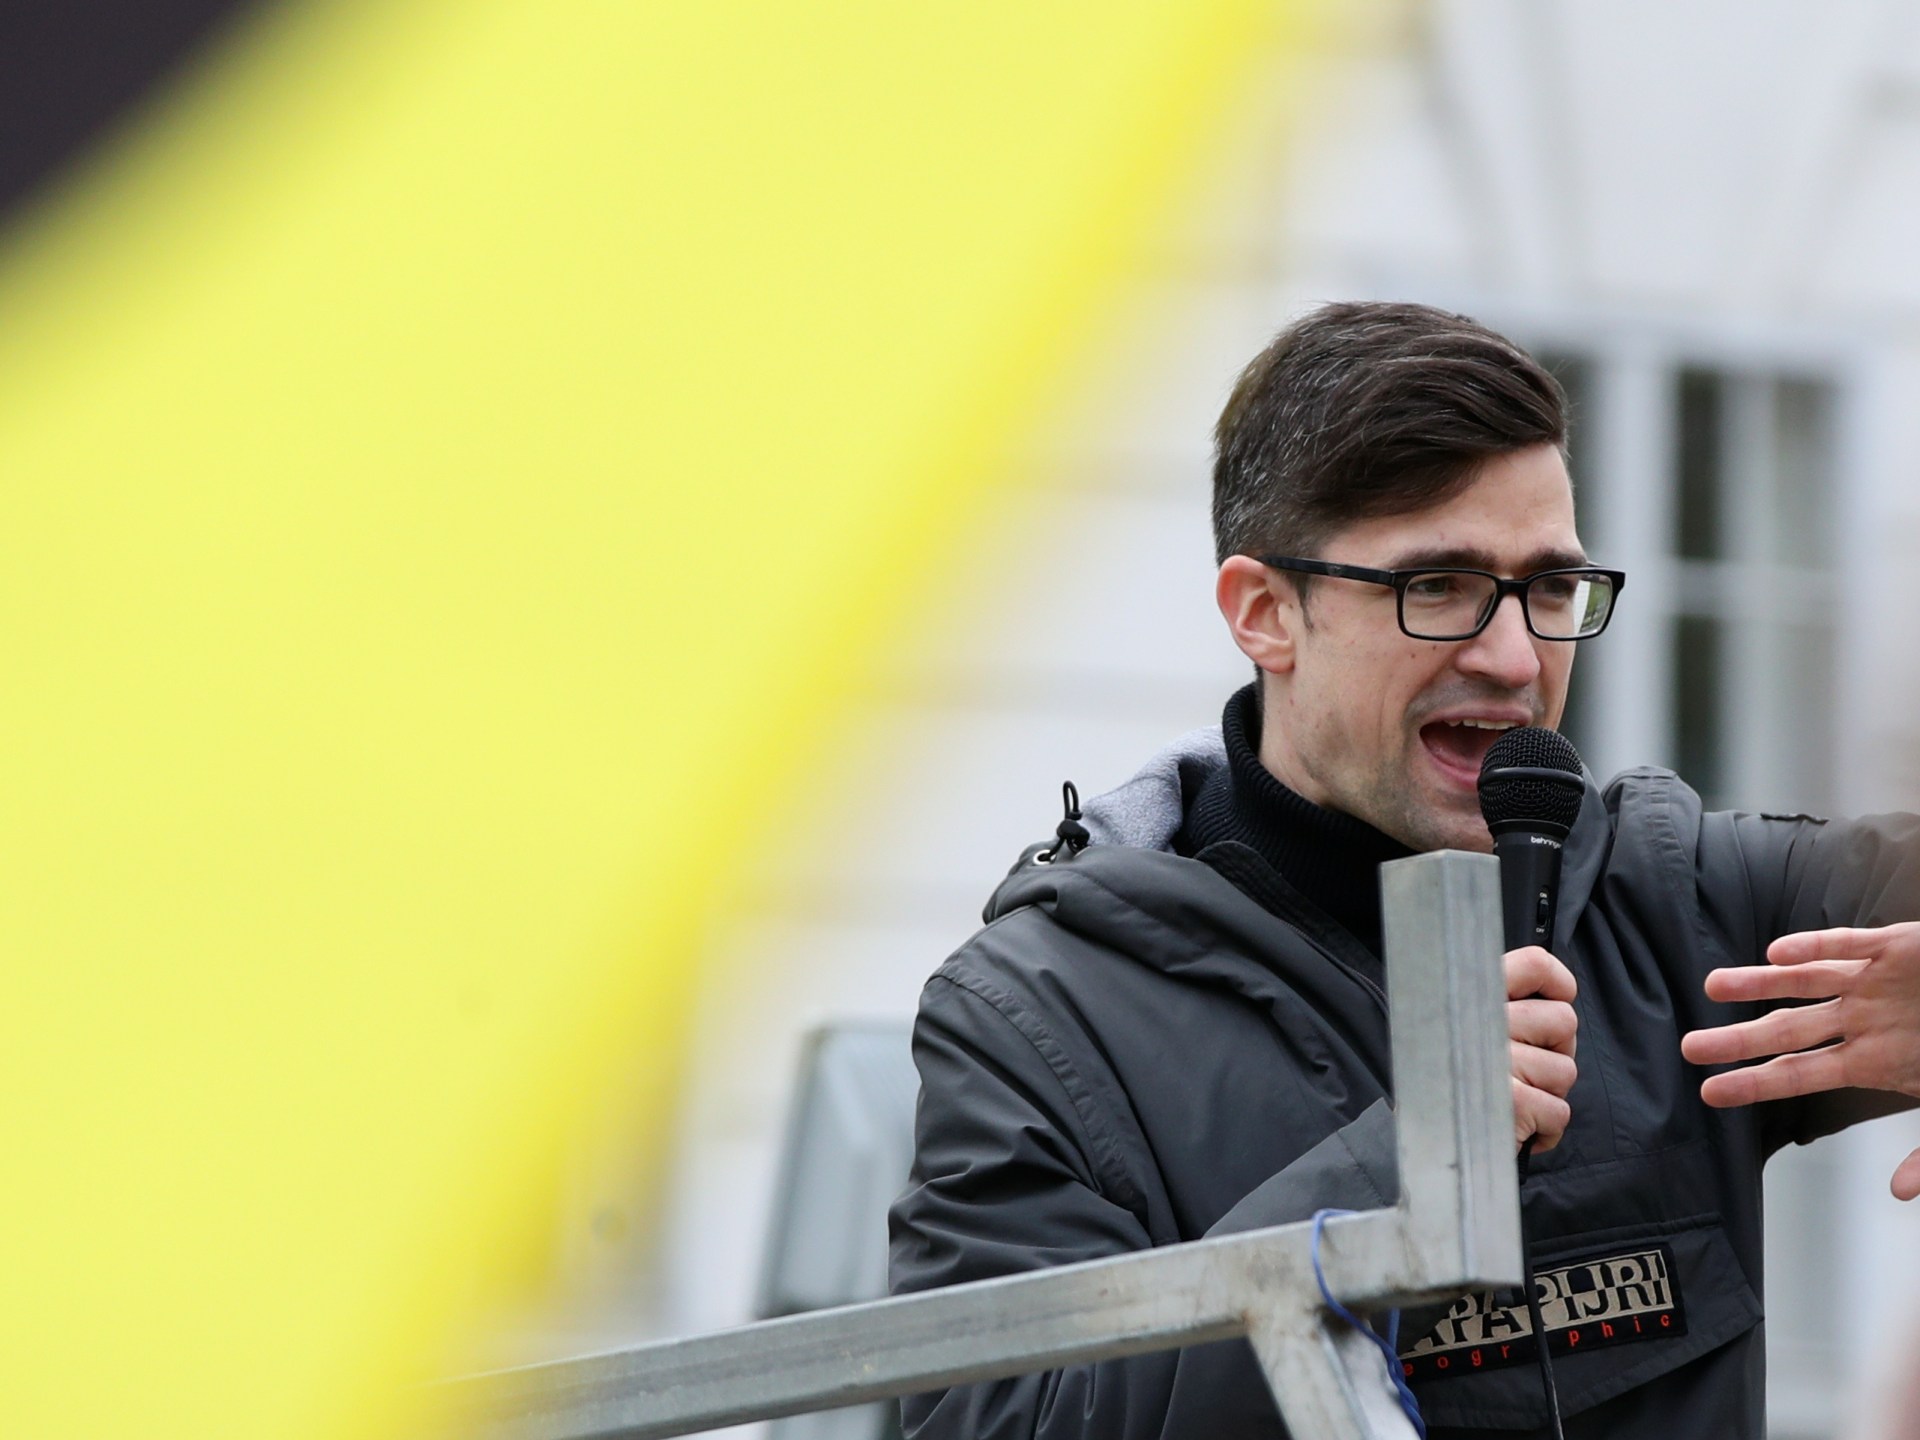 Dem rechtsextremen österreichischen Nationalisten Martin Sellner wird die Einreise nach Deutschland verboten |  Die rechtsextremen Nachrichten